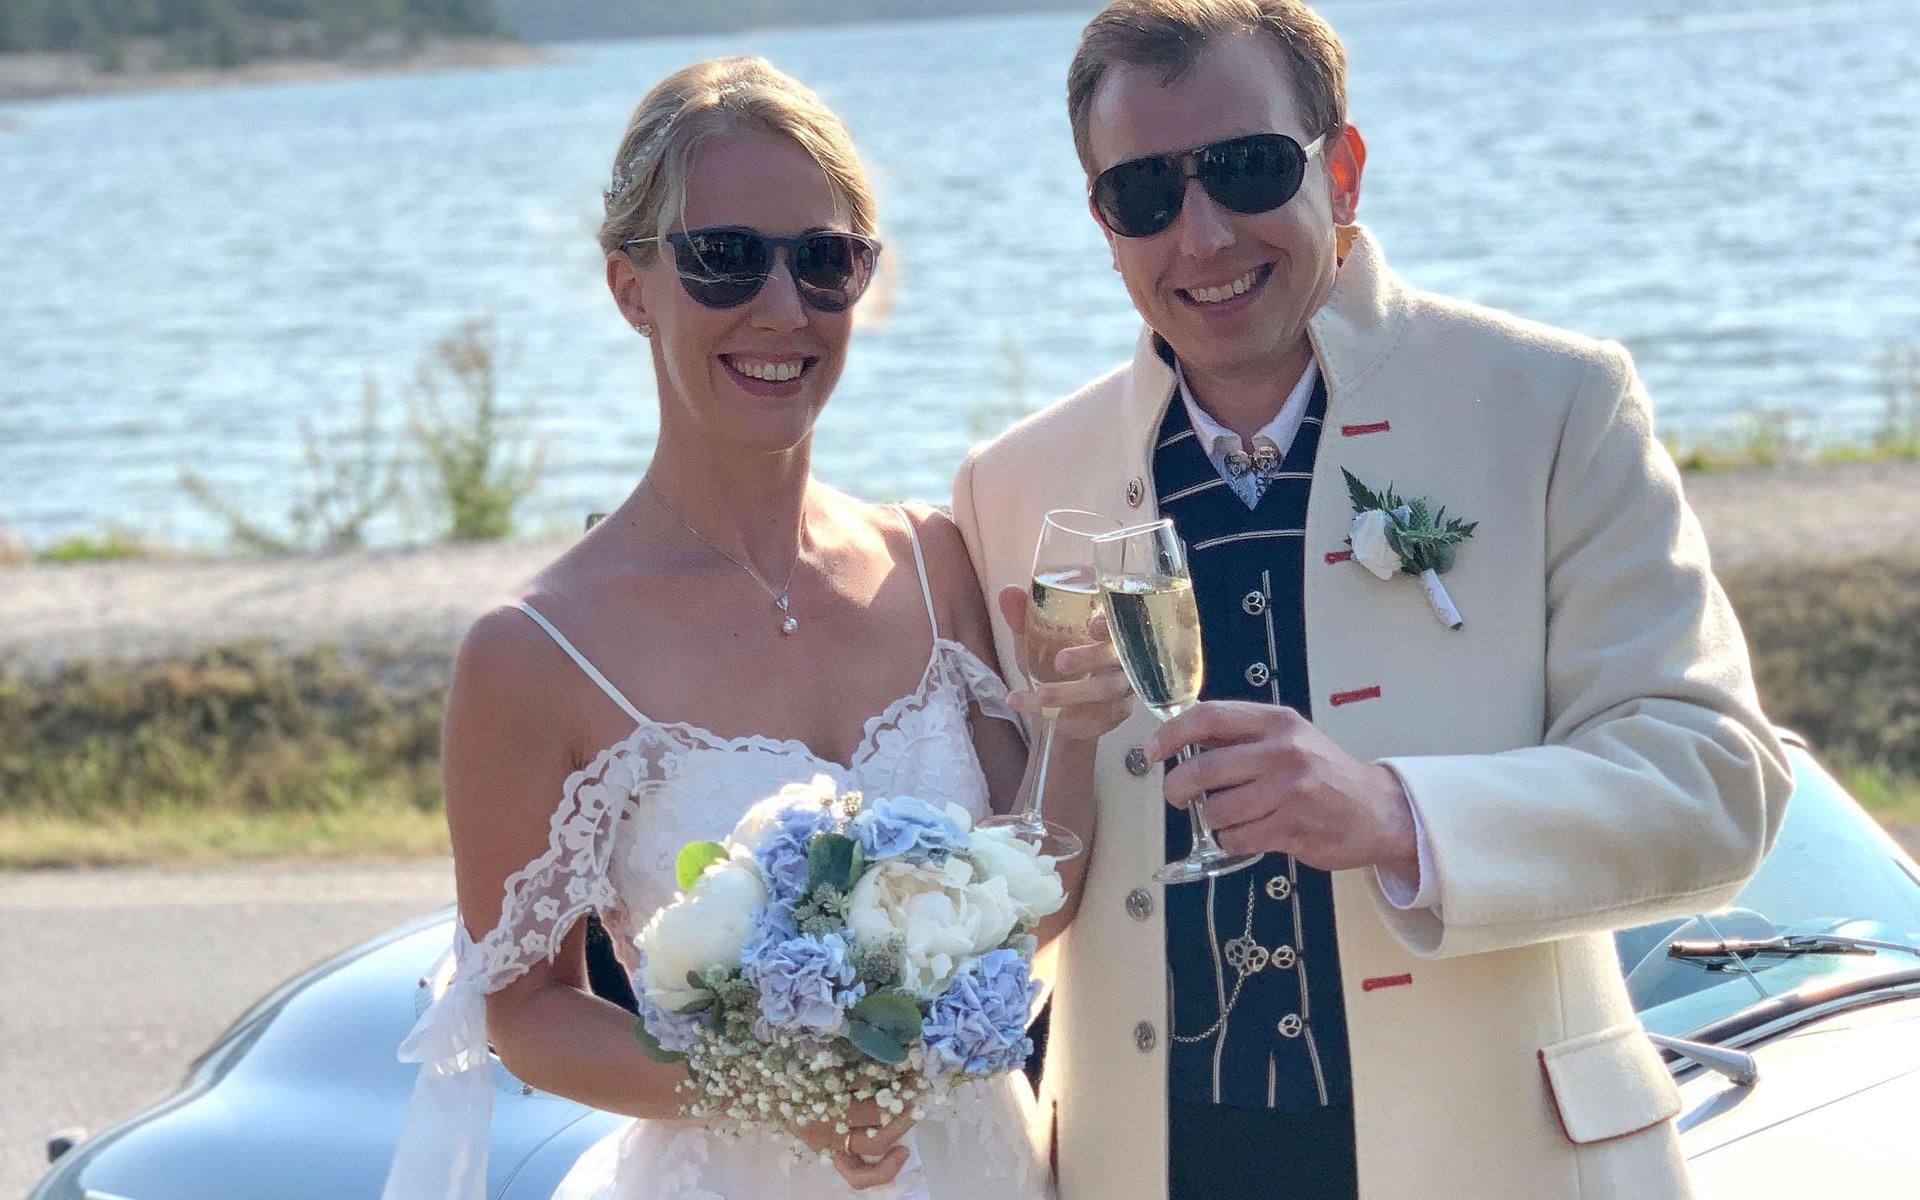 Eftersom besökarna till bröllopet kom från både Norge och Sverige, ville de vänta och genomföra sitt bröllop ordentligt.